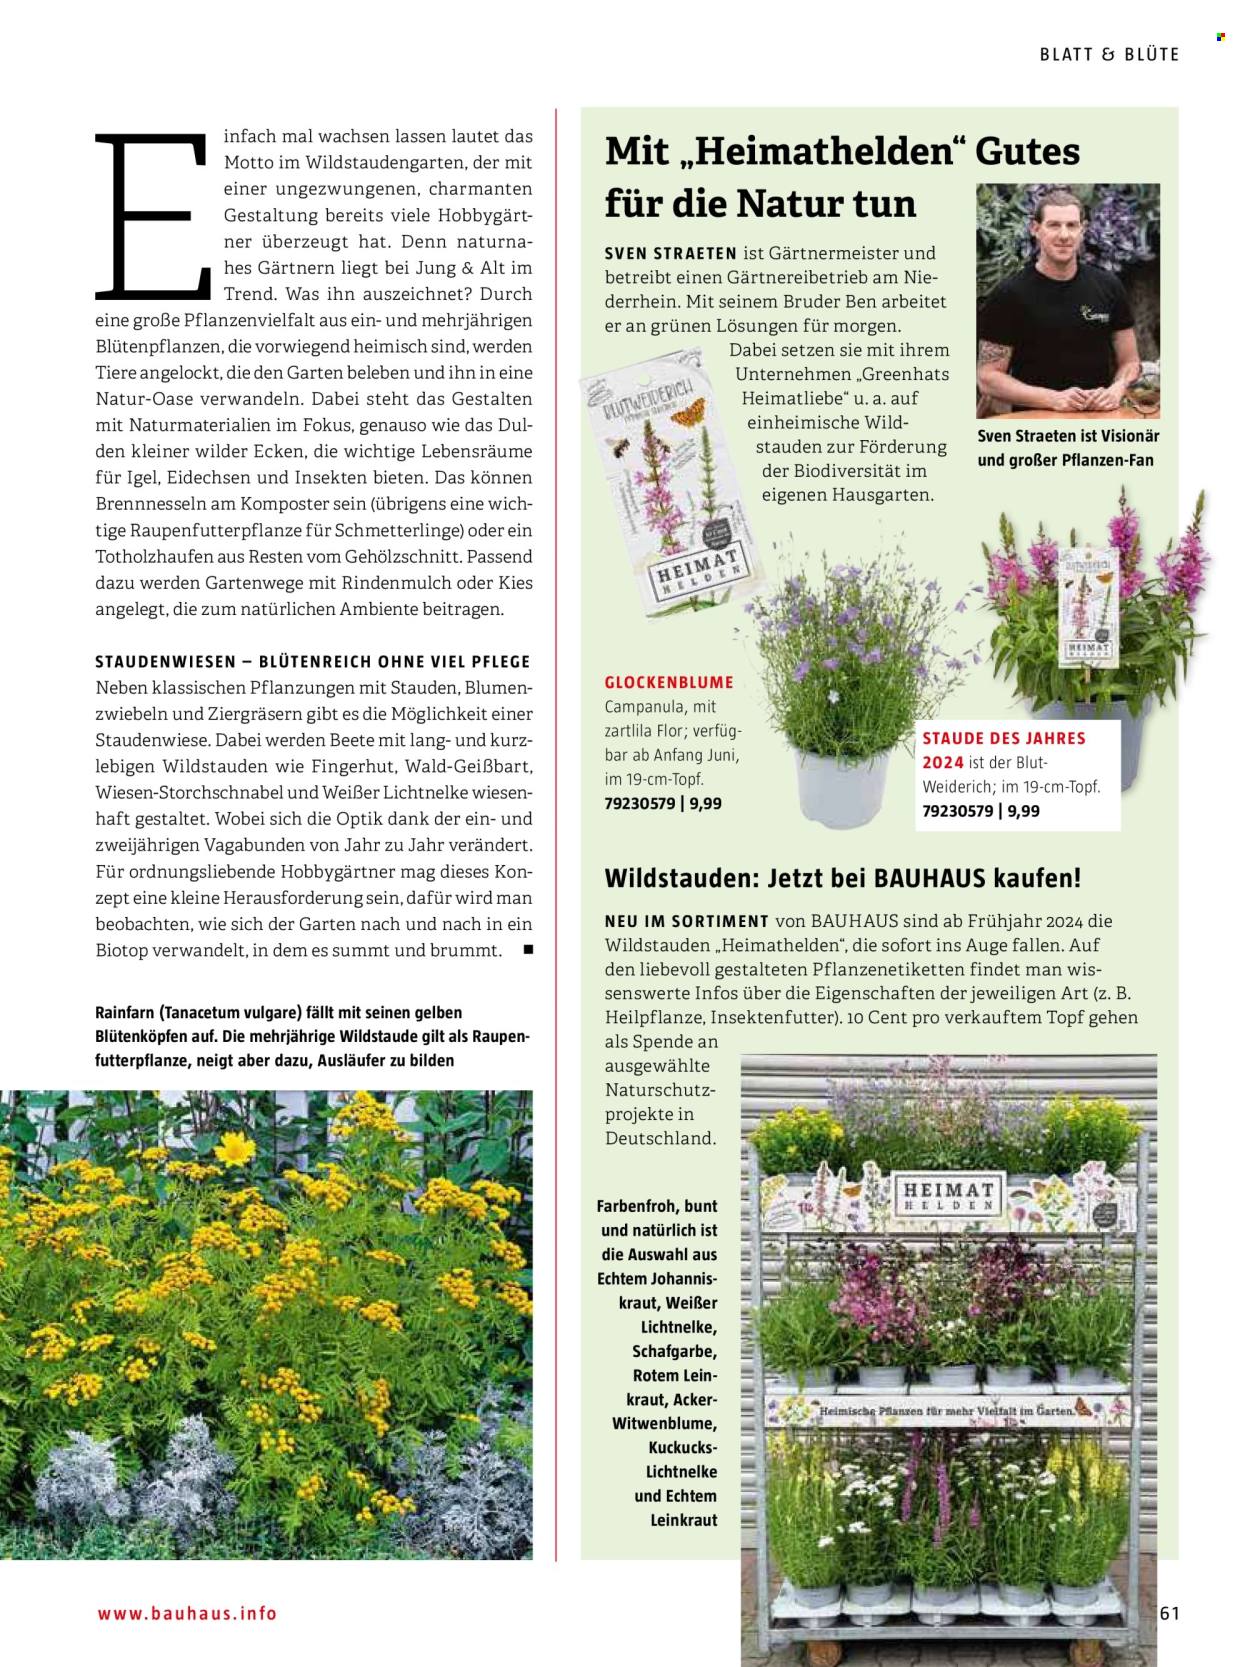 thumbnail - Prospekte Bauhaus - Produkte in Aktion - Hat, Kies, Campanula, Stauden, Blumenzwiebeln, Draußen-Pflanze, Rindenmulch, Komposter. Seite 61.